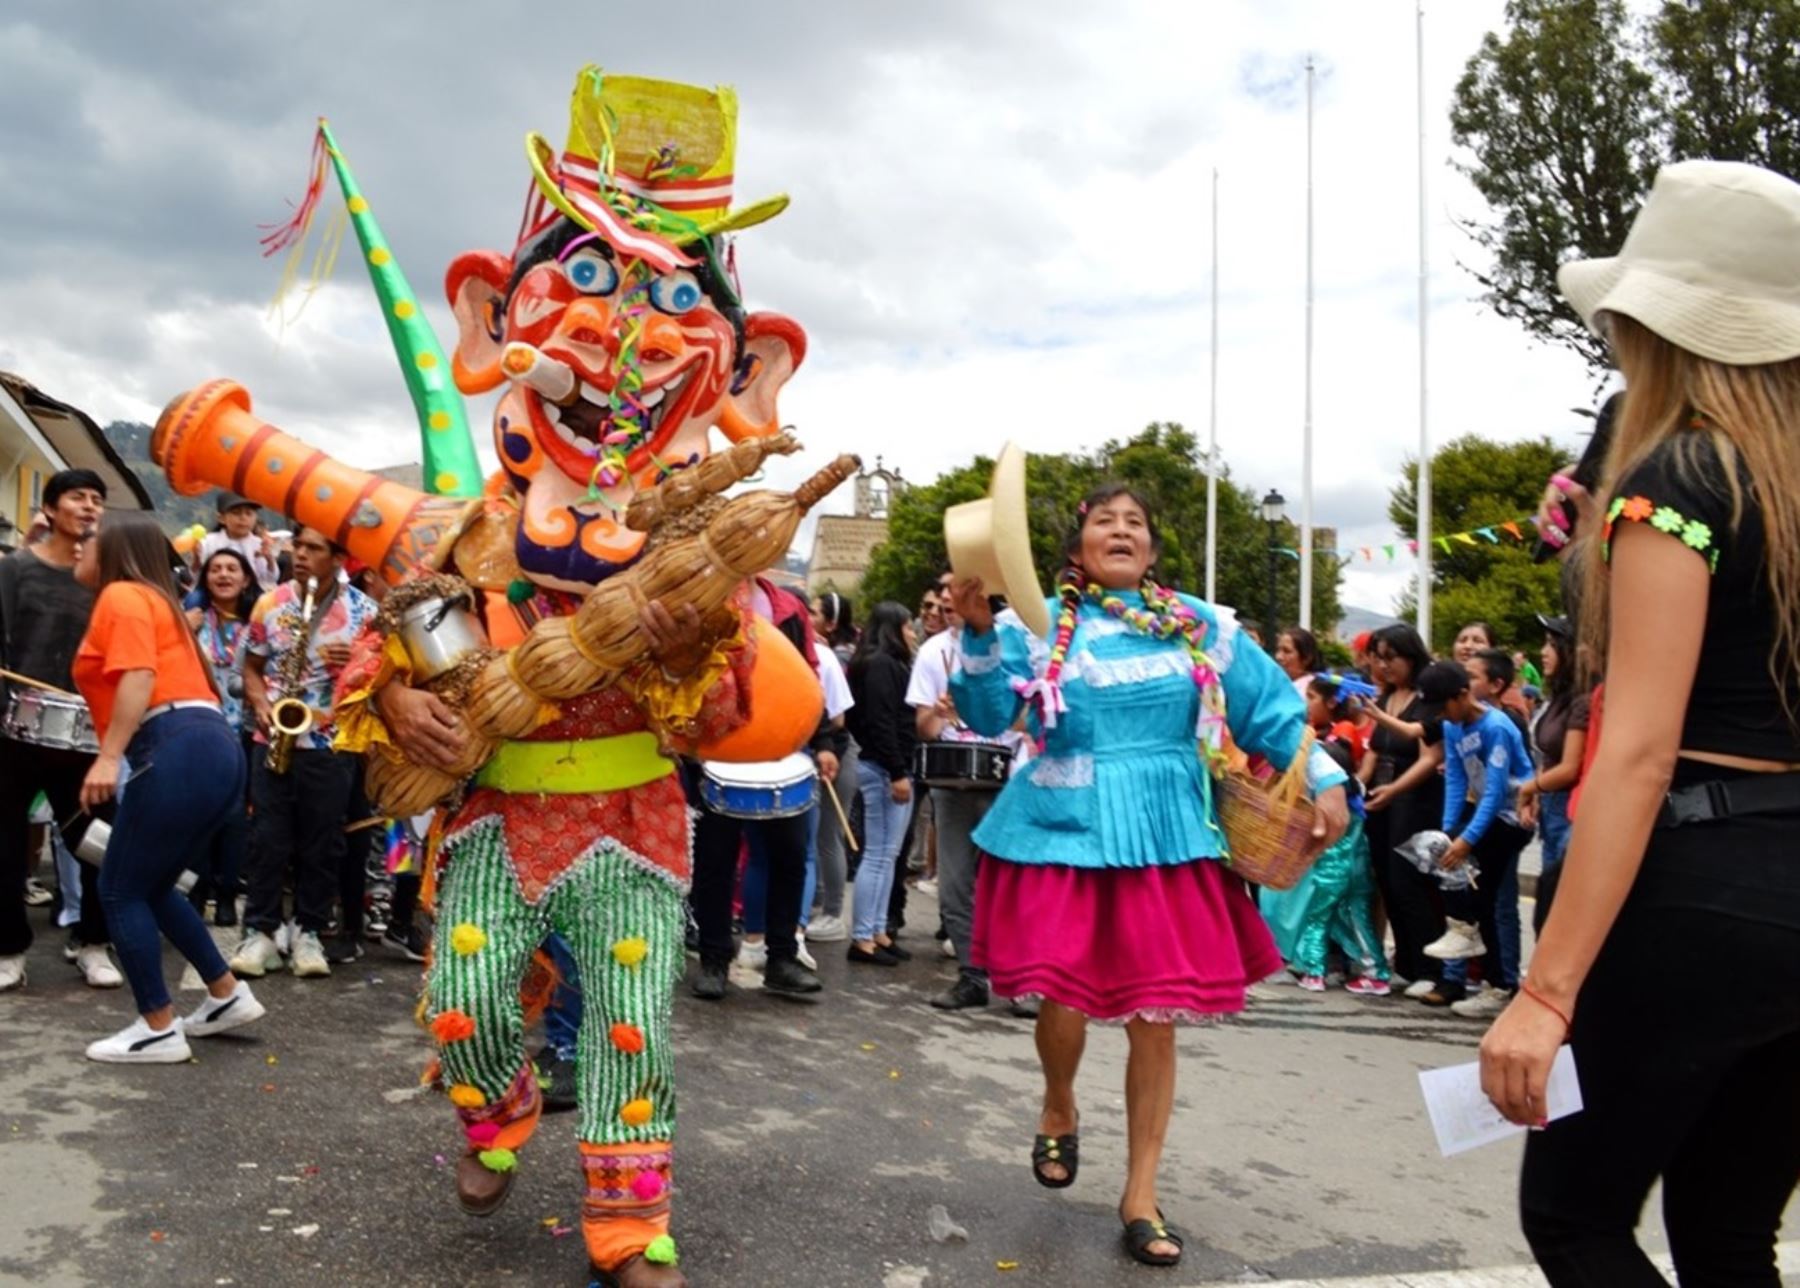 De todos los carnavales que se festejan en nuestro país, el de Cajamarca ha cobrado tal fama por su alborozada y organizada celebración, que le ha valido a esta histórica ciudad el título de Capital del Carnaval Peruano.